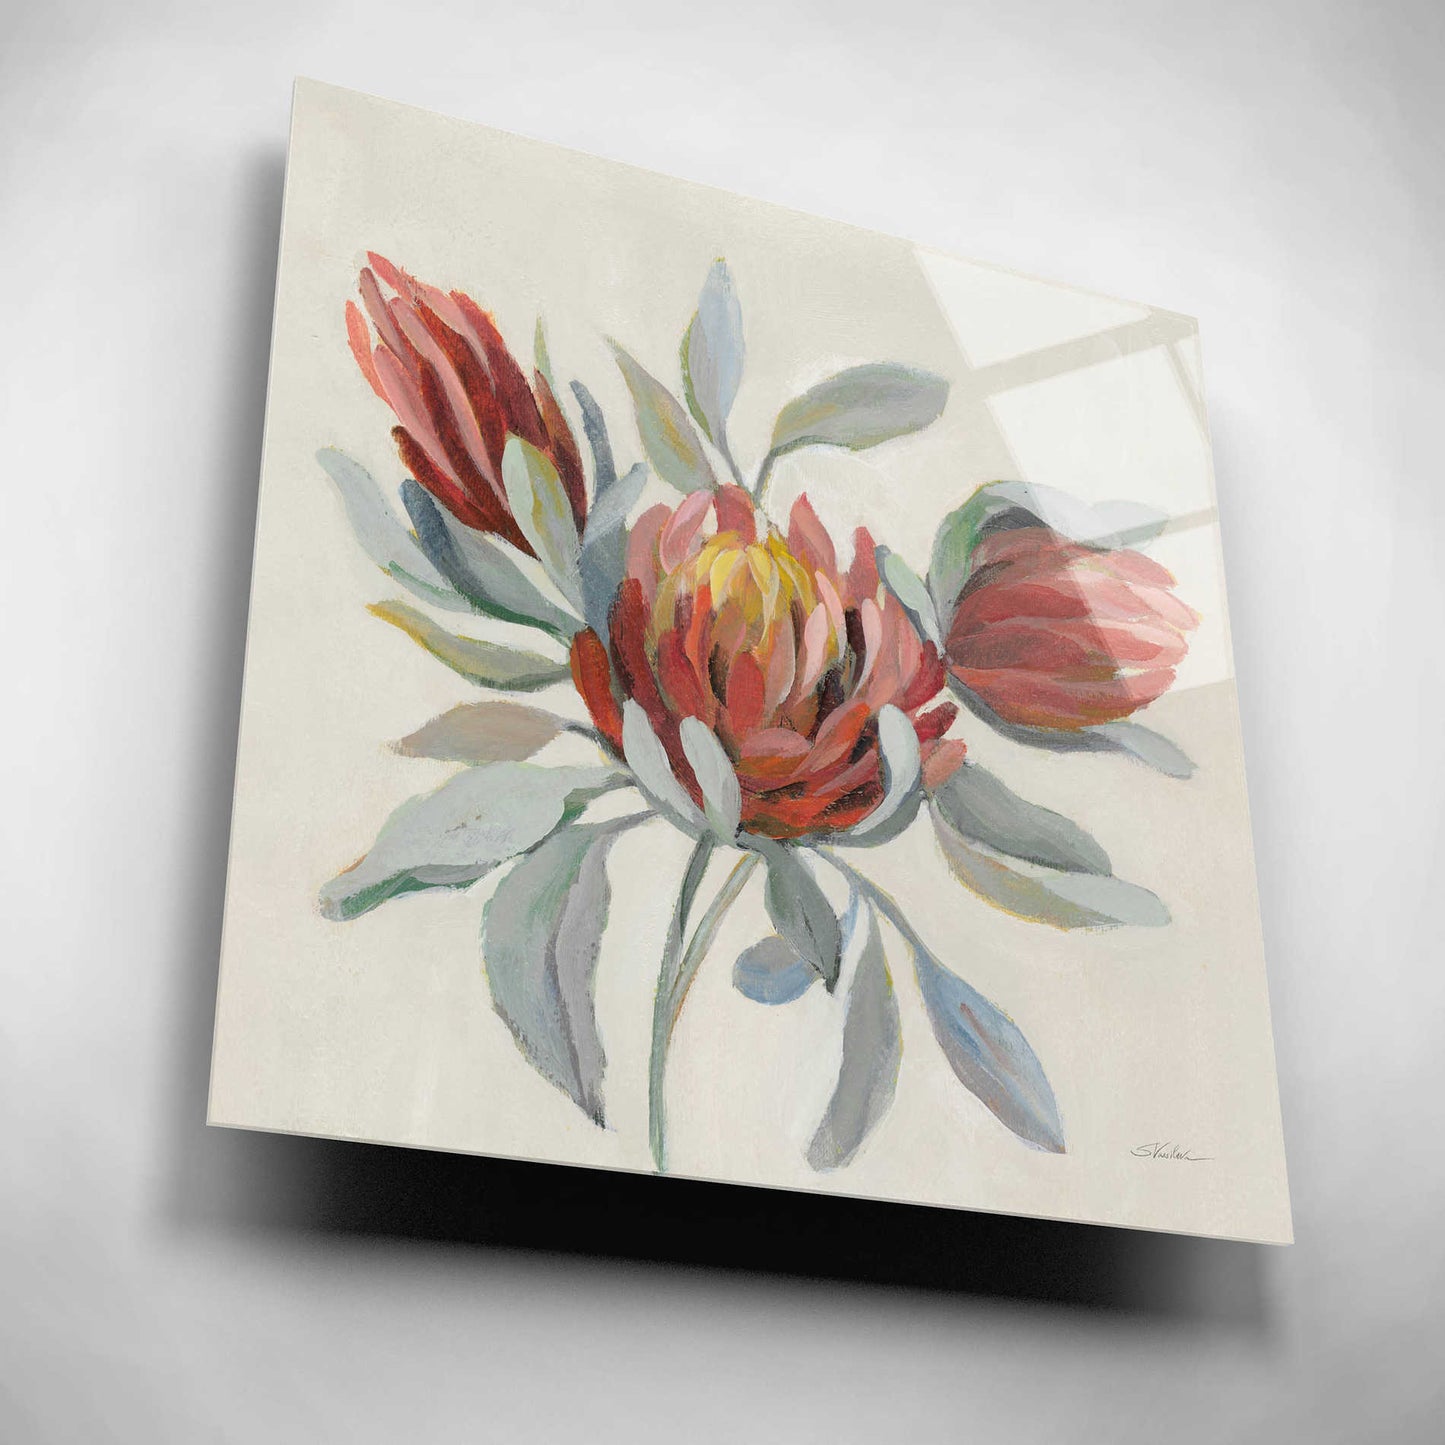 Epic Art 'Field Bloom I' by Silvia Vassileva, Acrylic Glass Wall Art,12x12